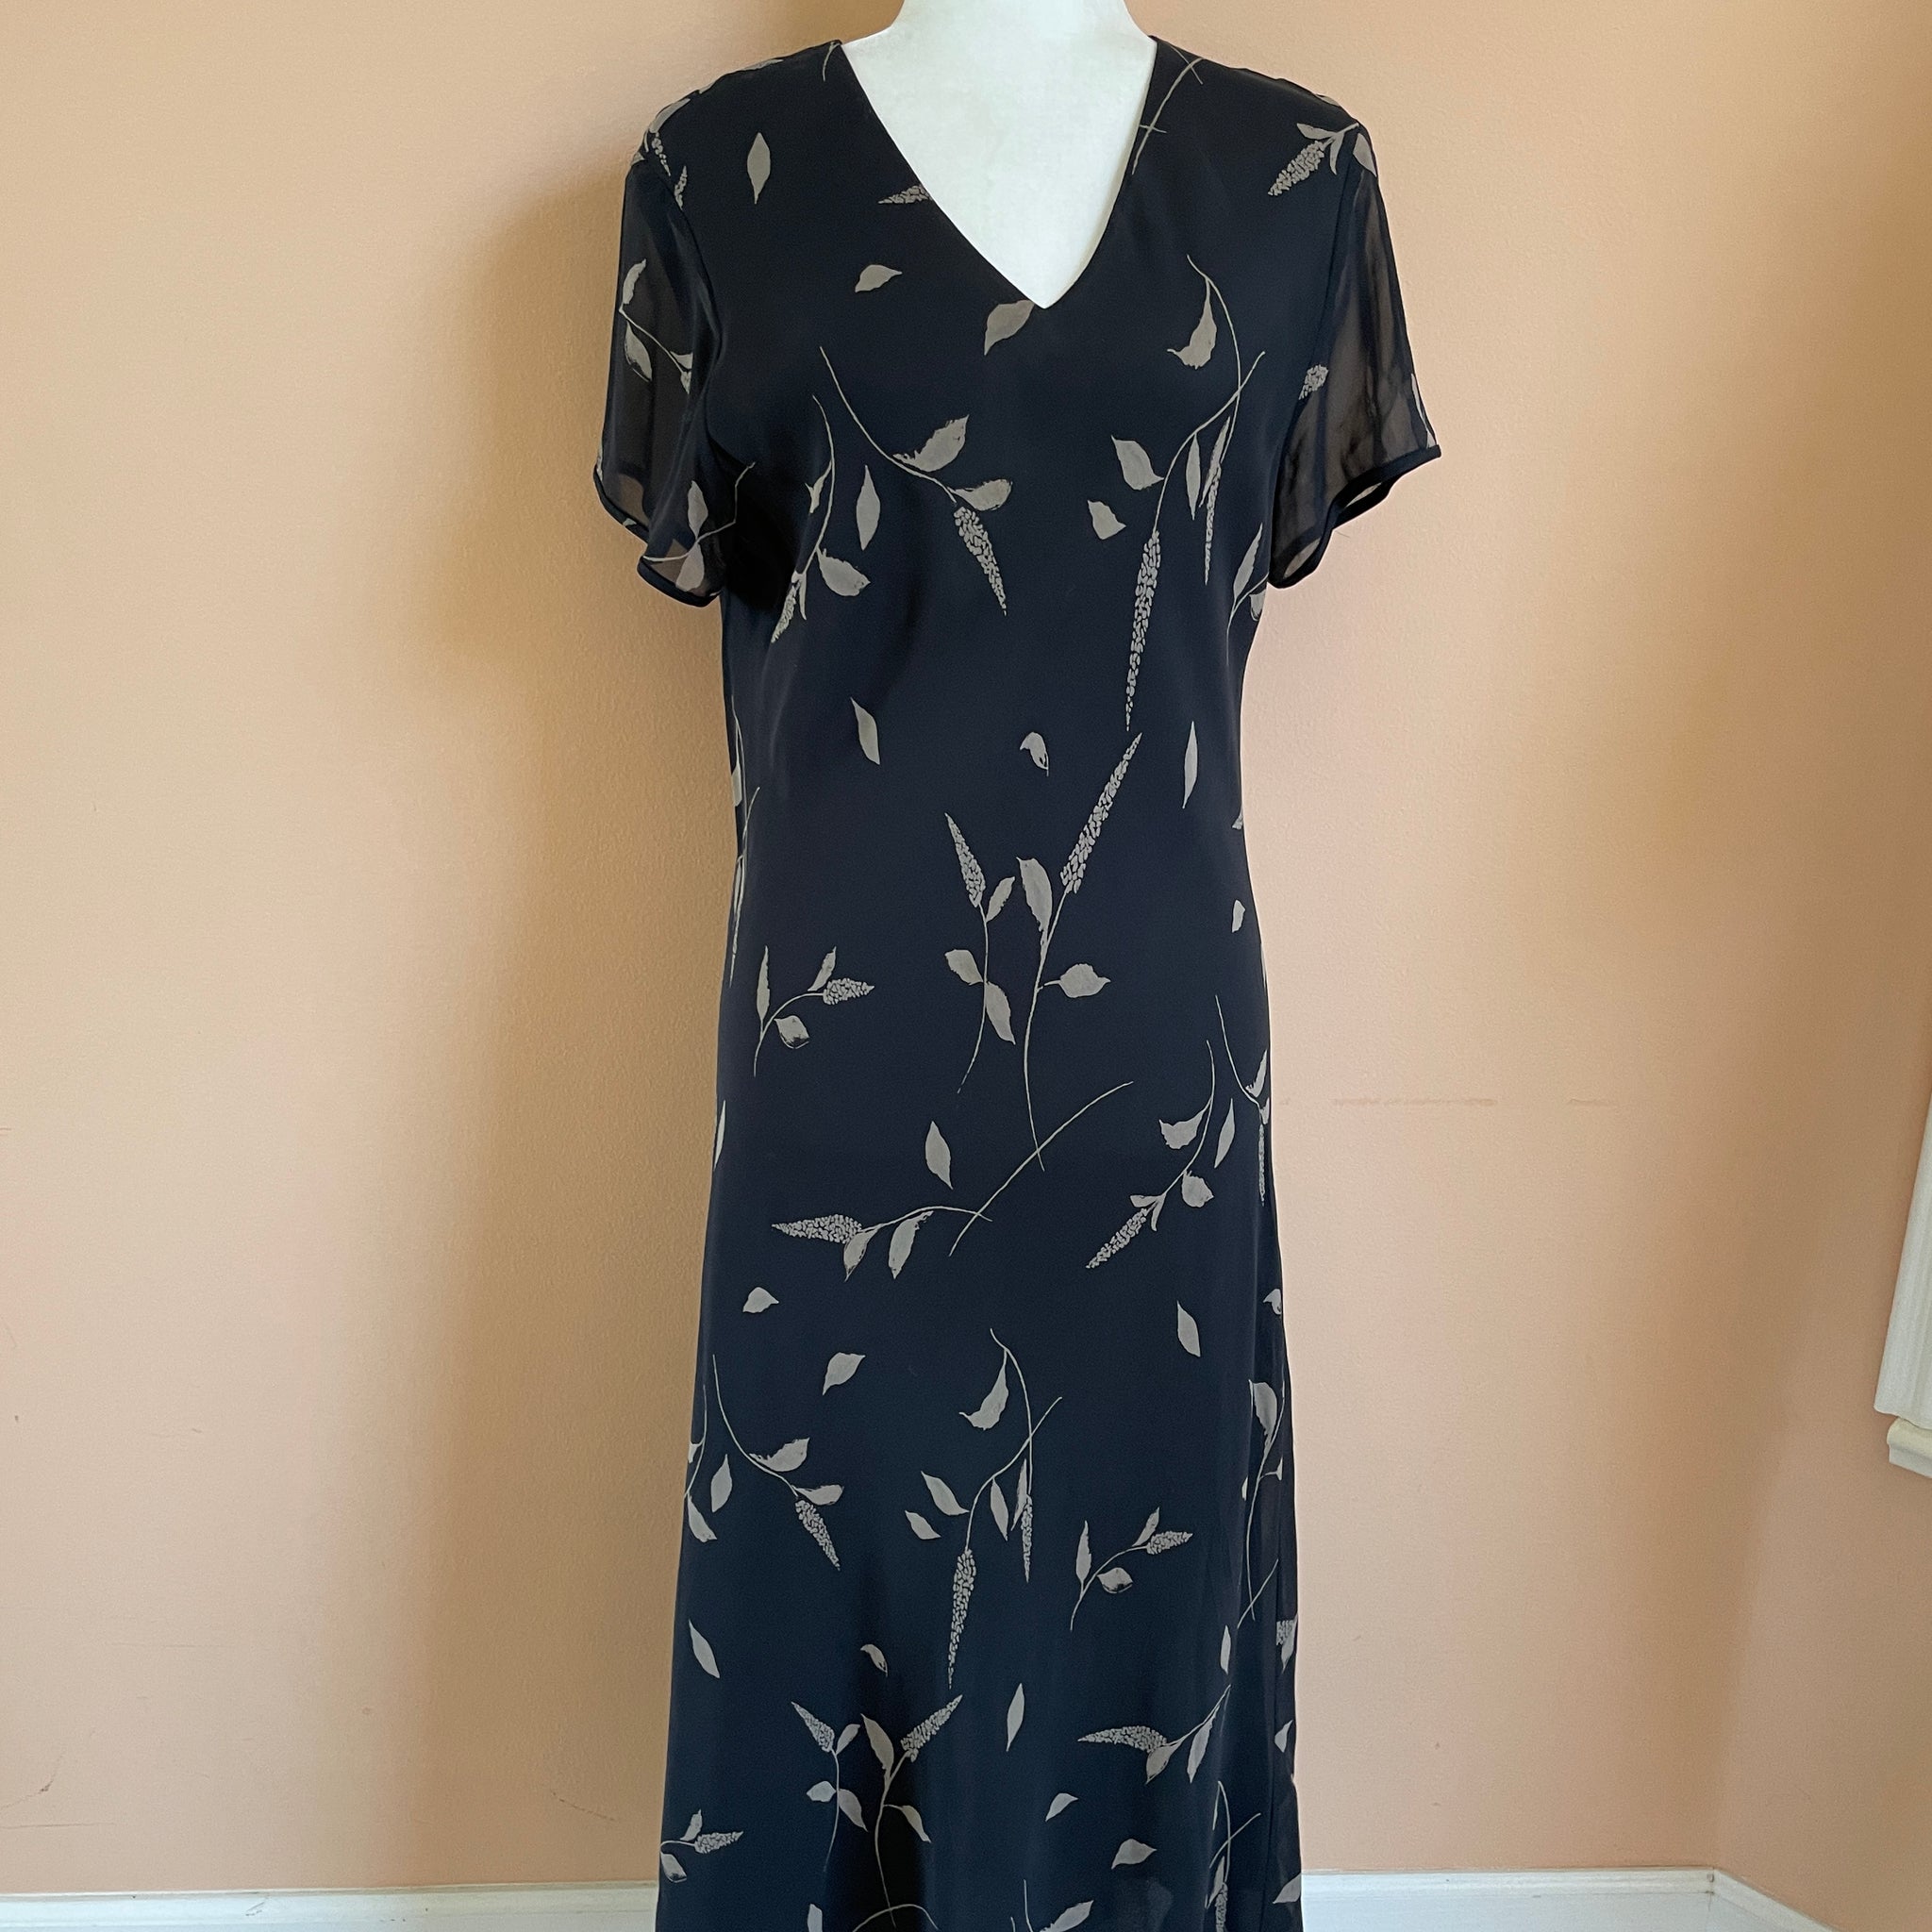 Falling Leaf 20OOs 100% Silk Black Long Sheath Dress